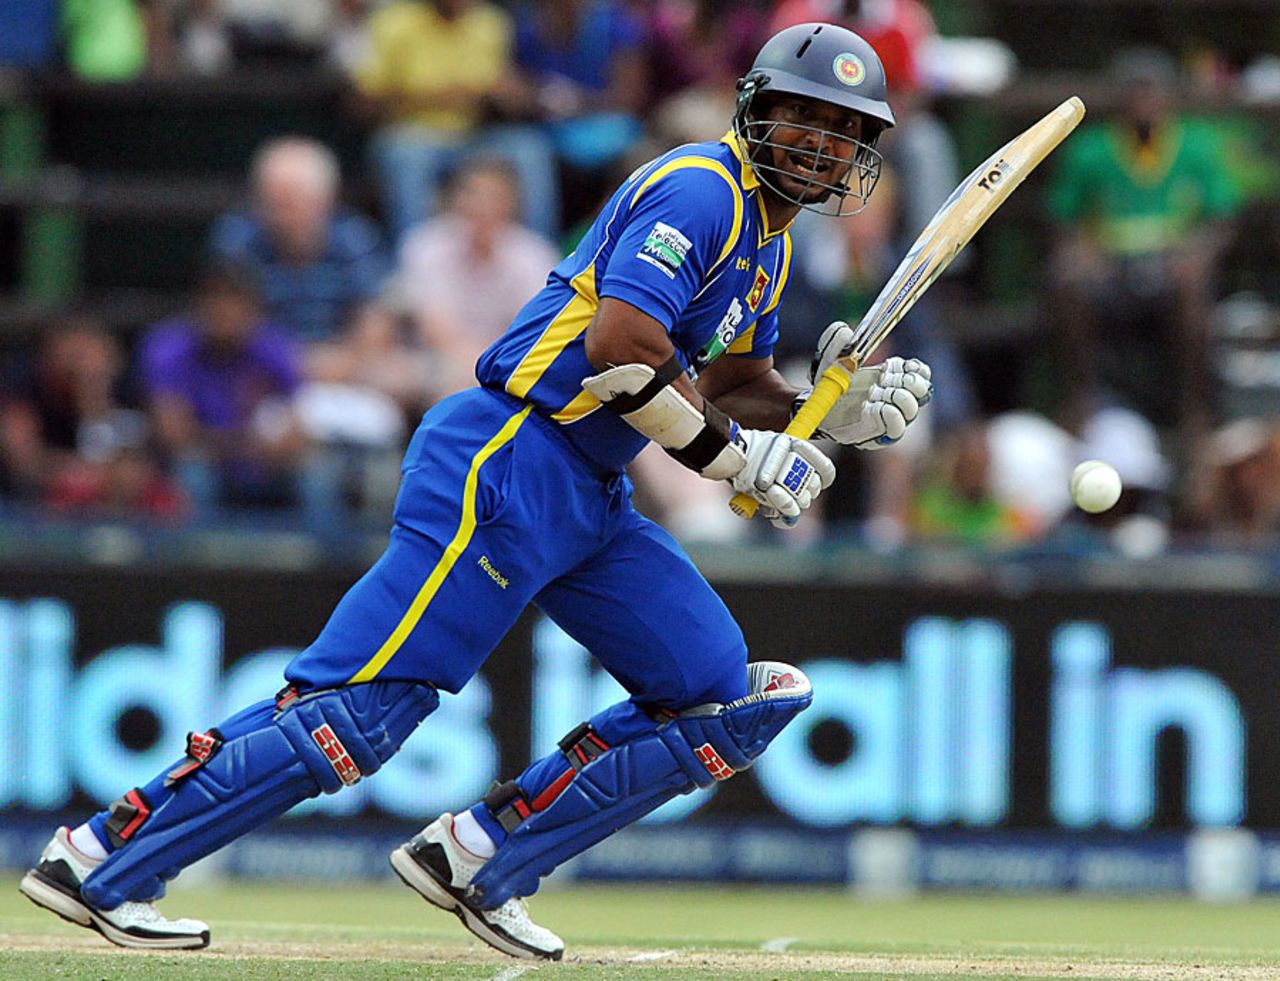 Kumar Sangakkara works it to the on side, South Africa v Sri Lanka, 5th ODI, Johannesburg, January 22, 2012